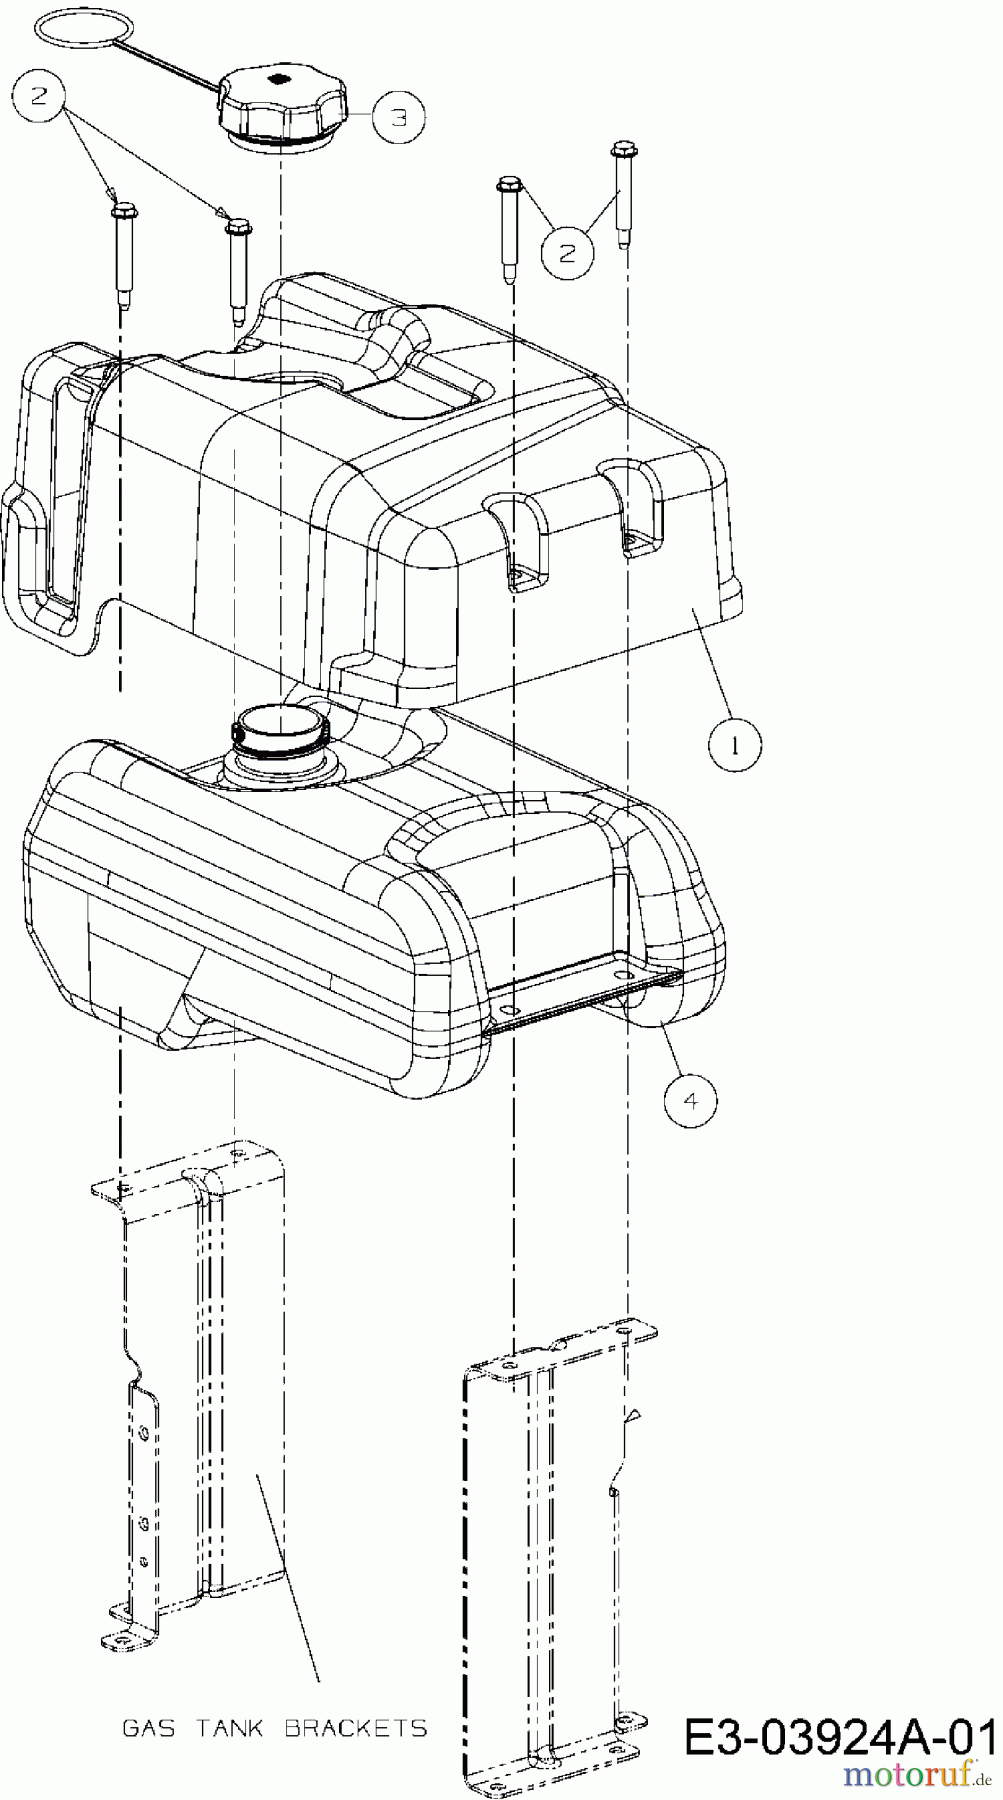  Cub Cadet Motormäher mit Antrieb Wide Cut E-Start 12AE764U603  (2013) Tank